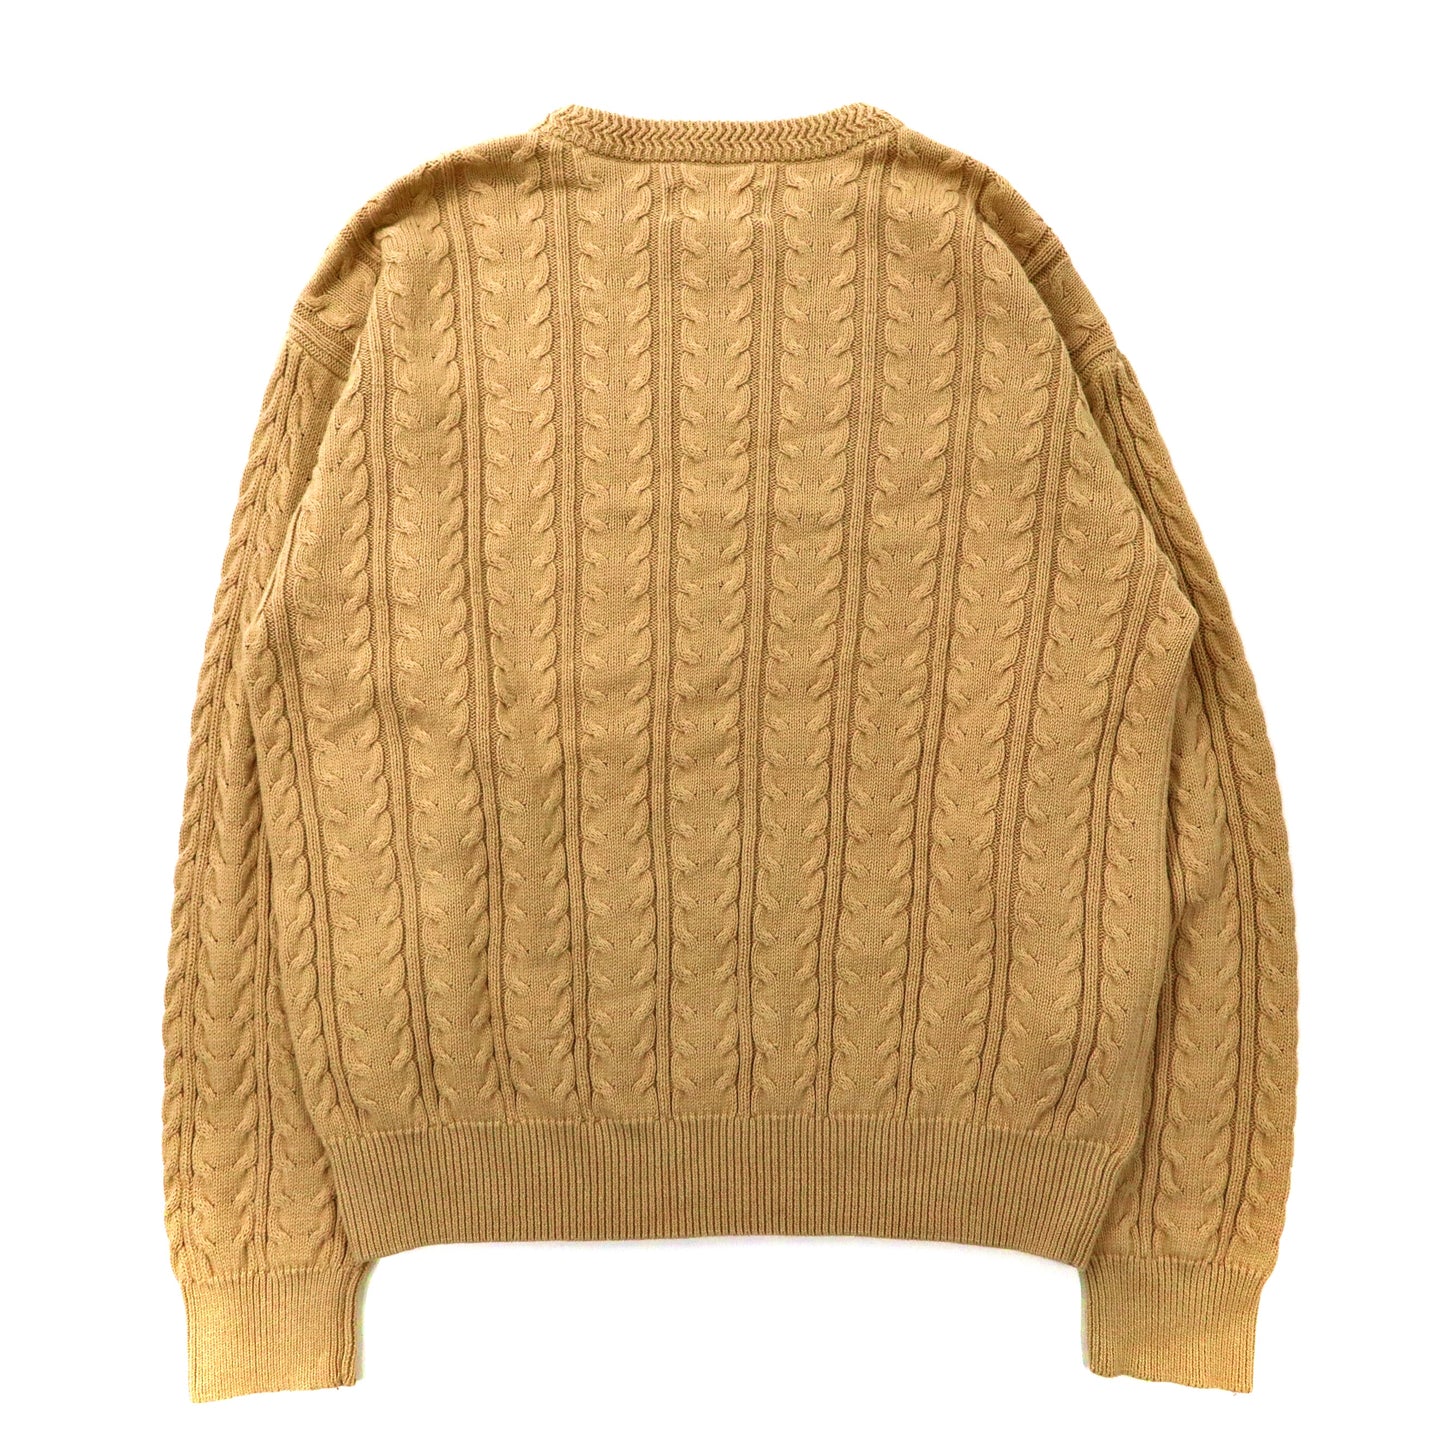 90's Cable Cotton Knit Sweater ビッグサイズ ケーブルニット セーター M ベージュ コットン ROUNDTREE & YORKE 90年代